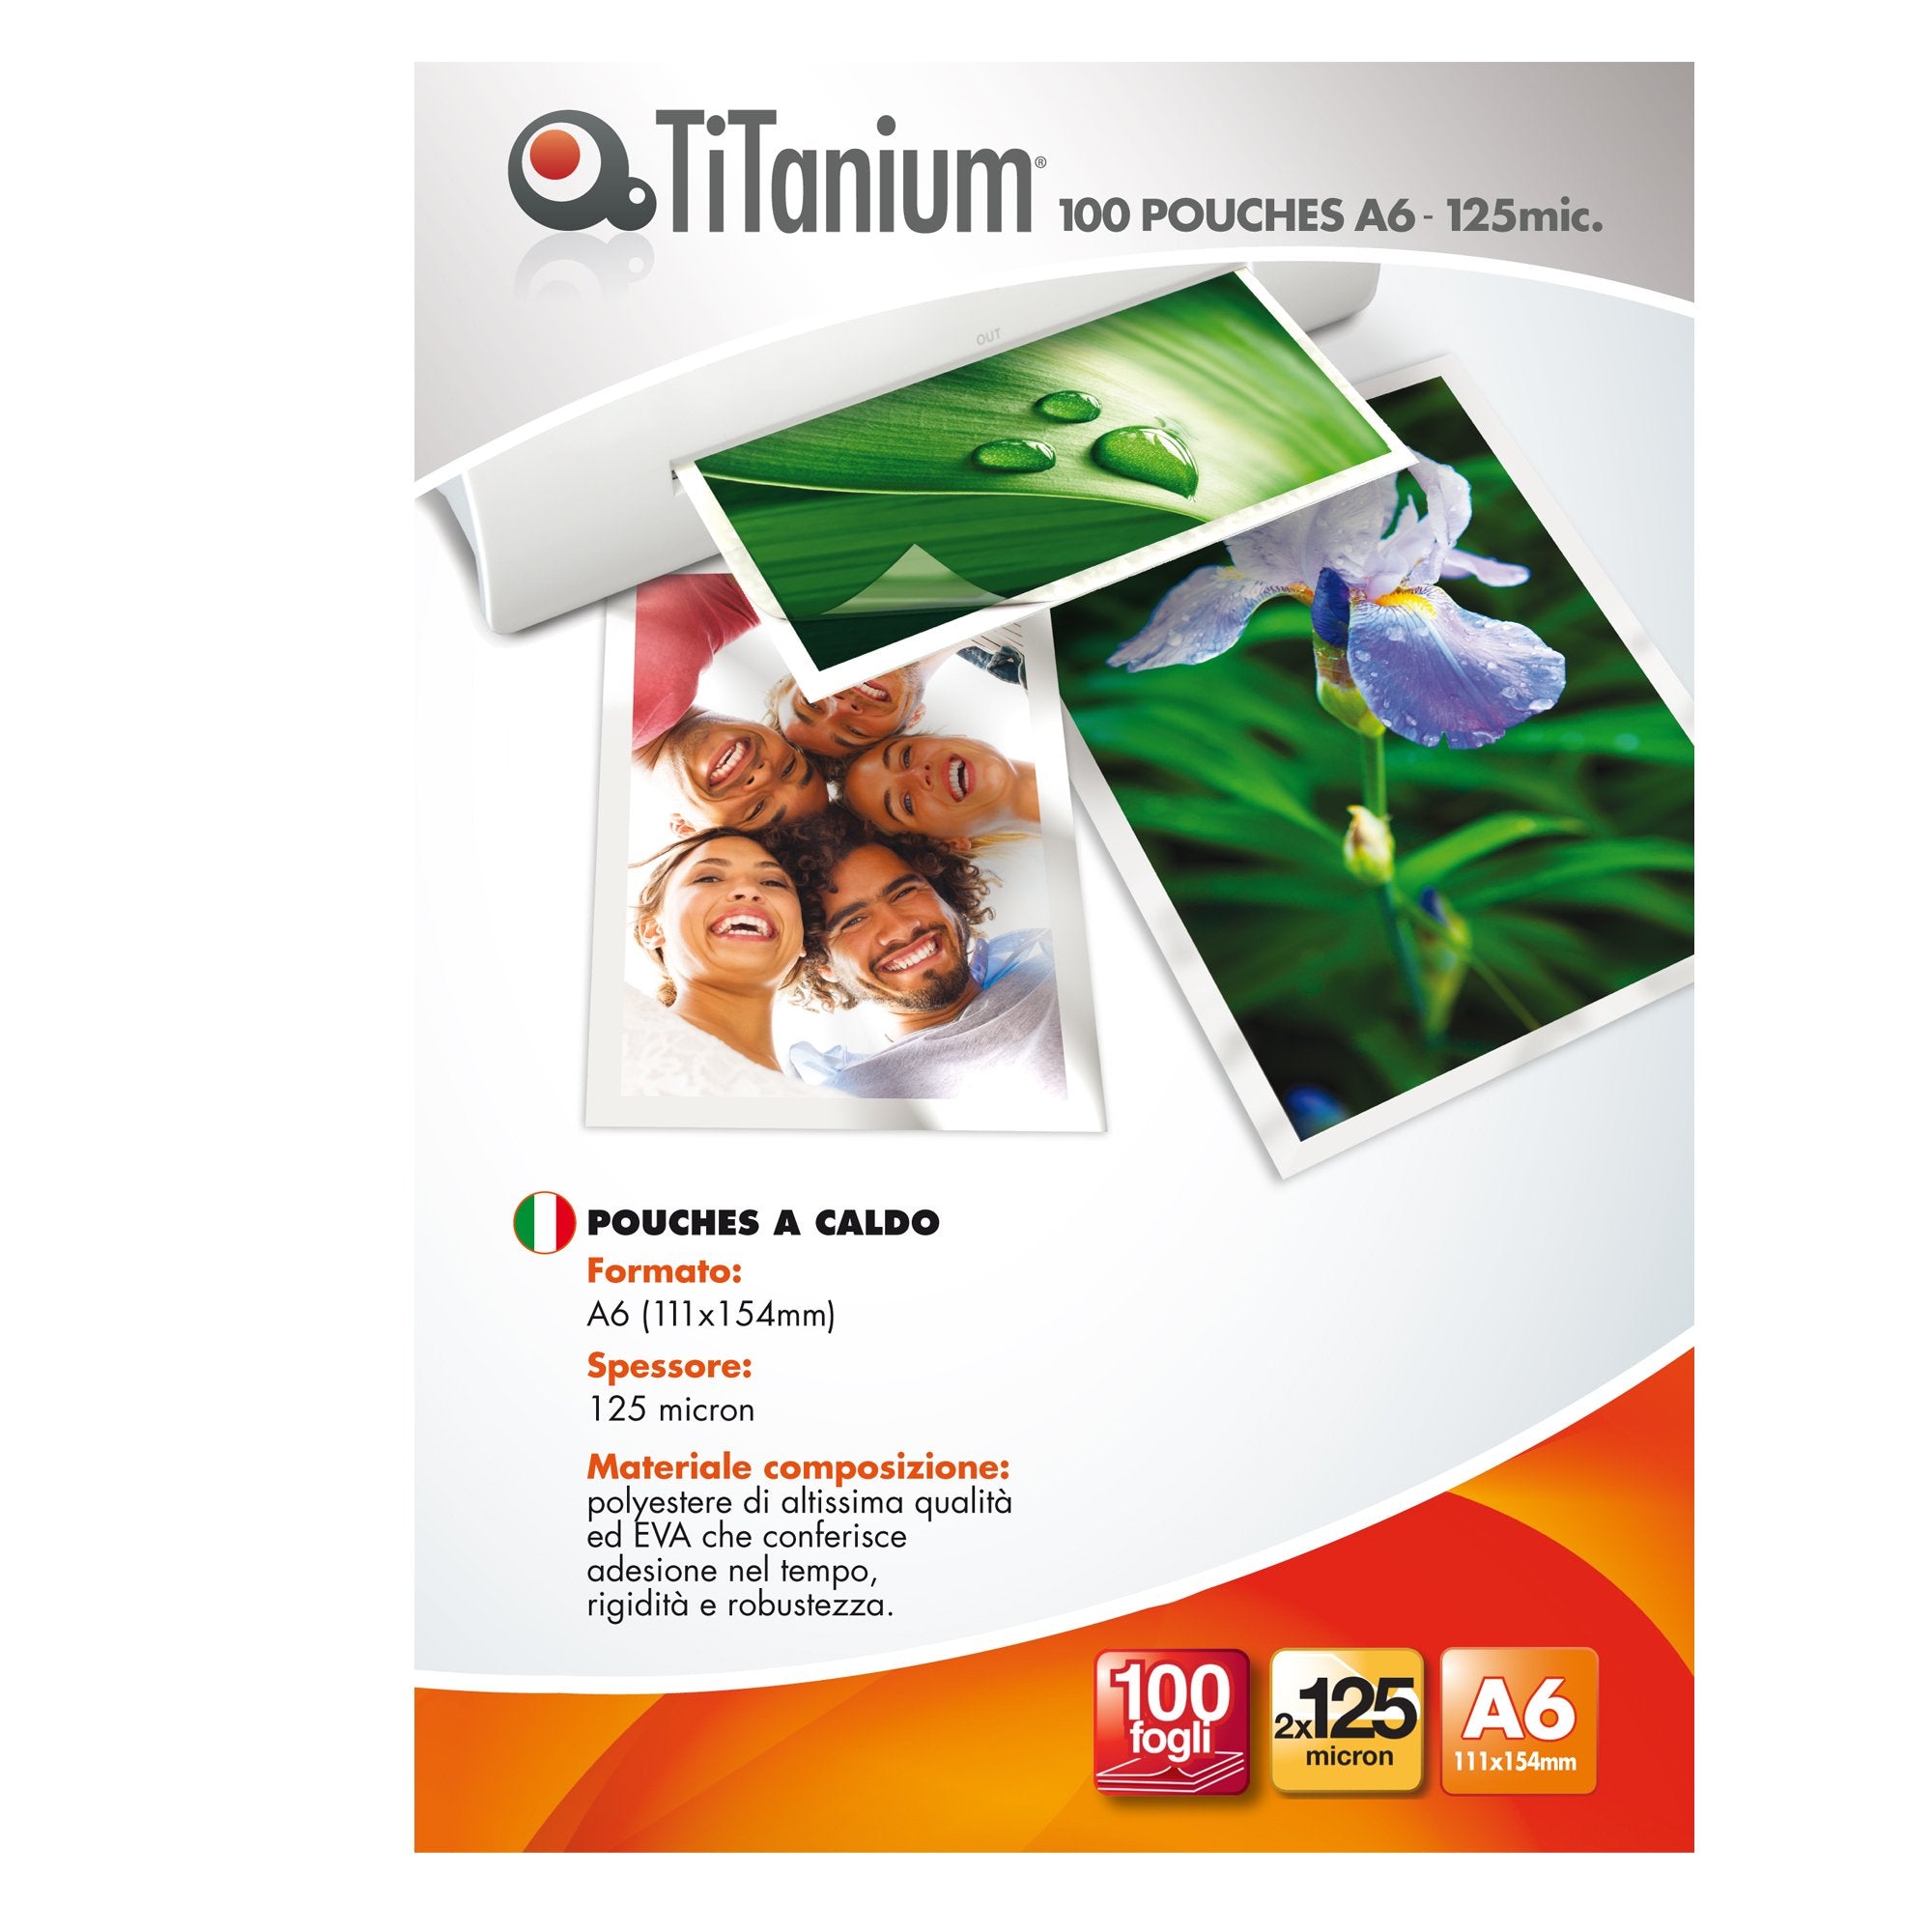 titanium-100-pouches-111x154mm-a6-125my